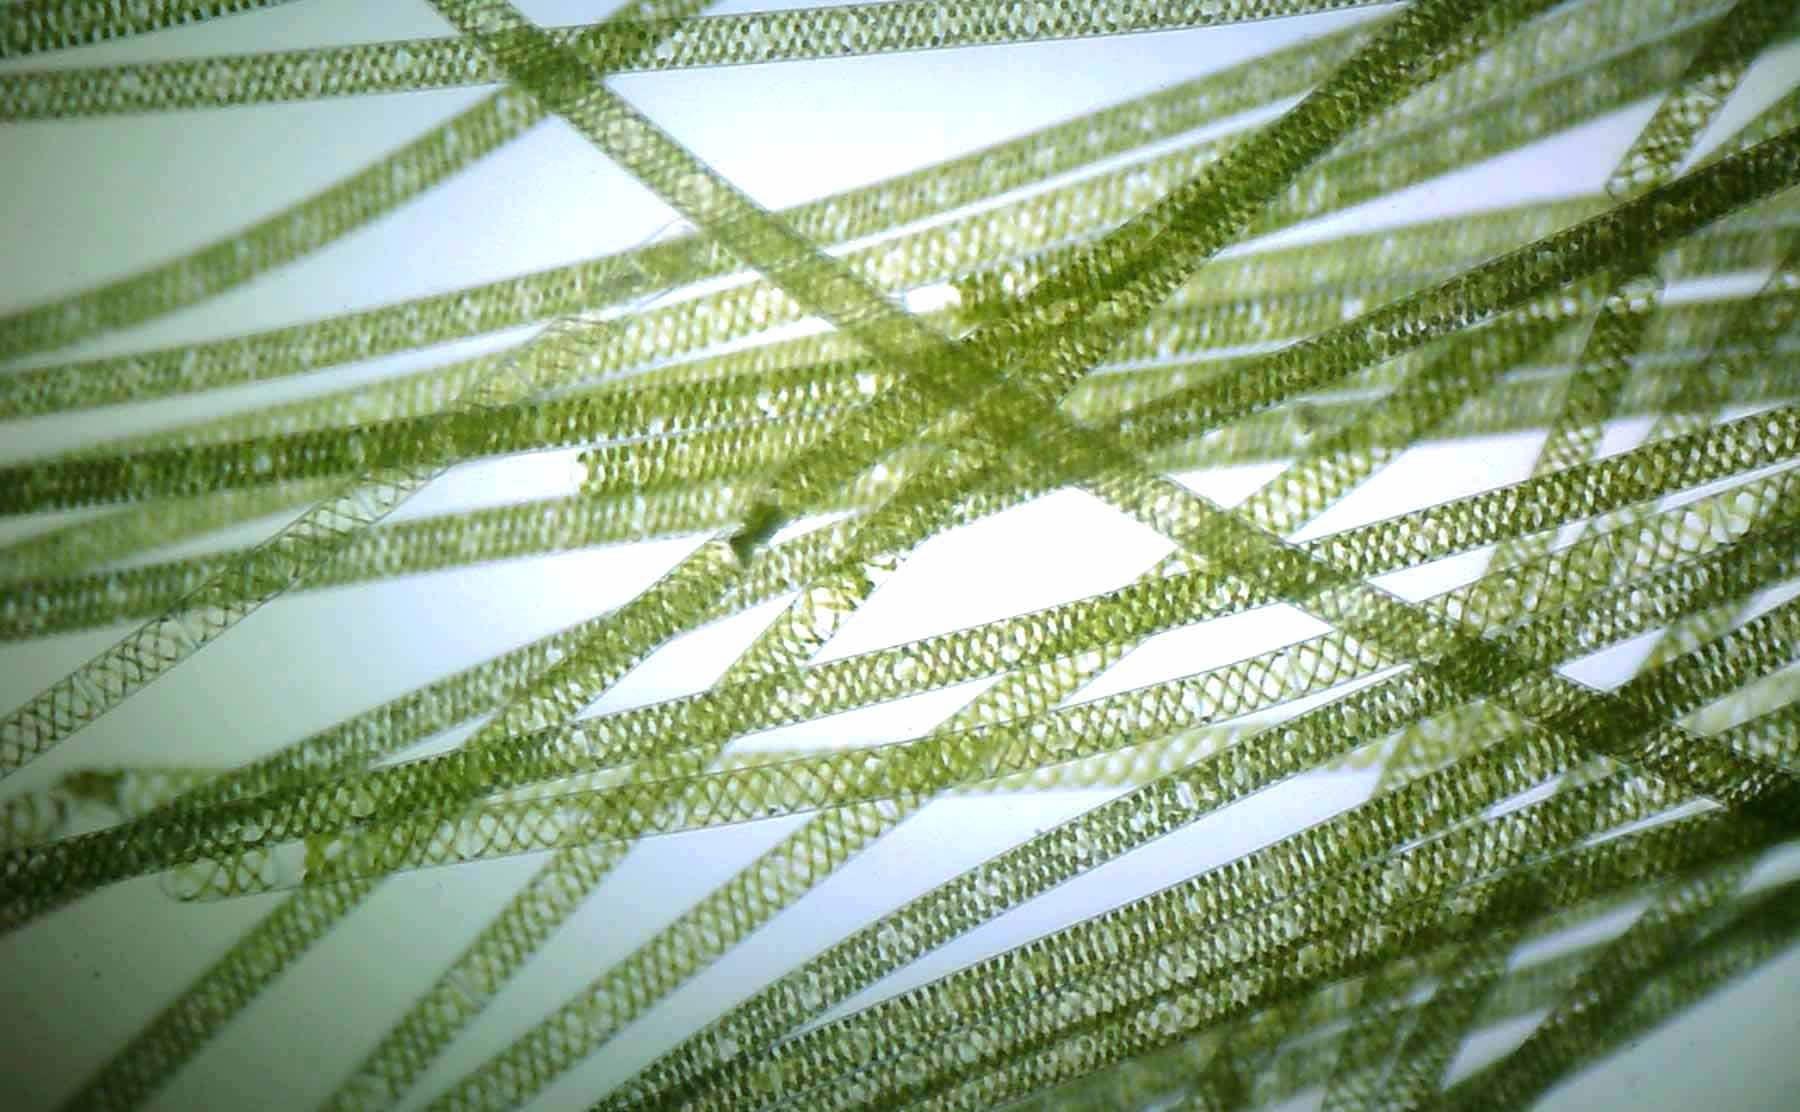 Спирогира нитчатая. Нитчатая водоросль спирогира. Многоклеточная нитчатая зелёная водоросль спирогира. Водоросль спирогира под микроскопом. Многоклеточные зеленые водоросли спирогира.